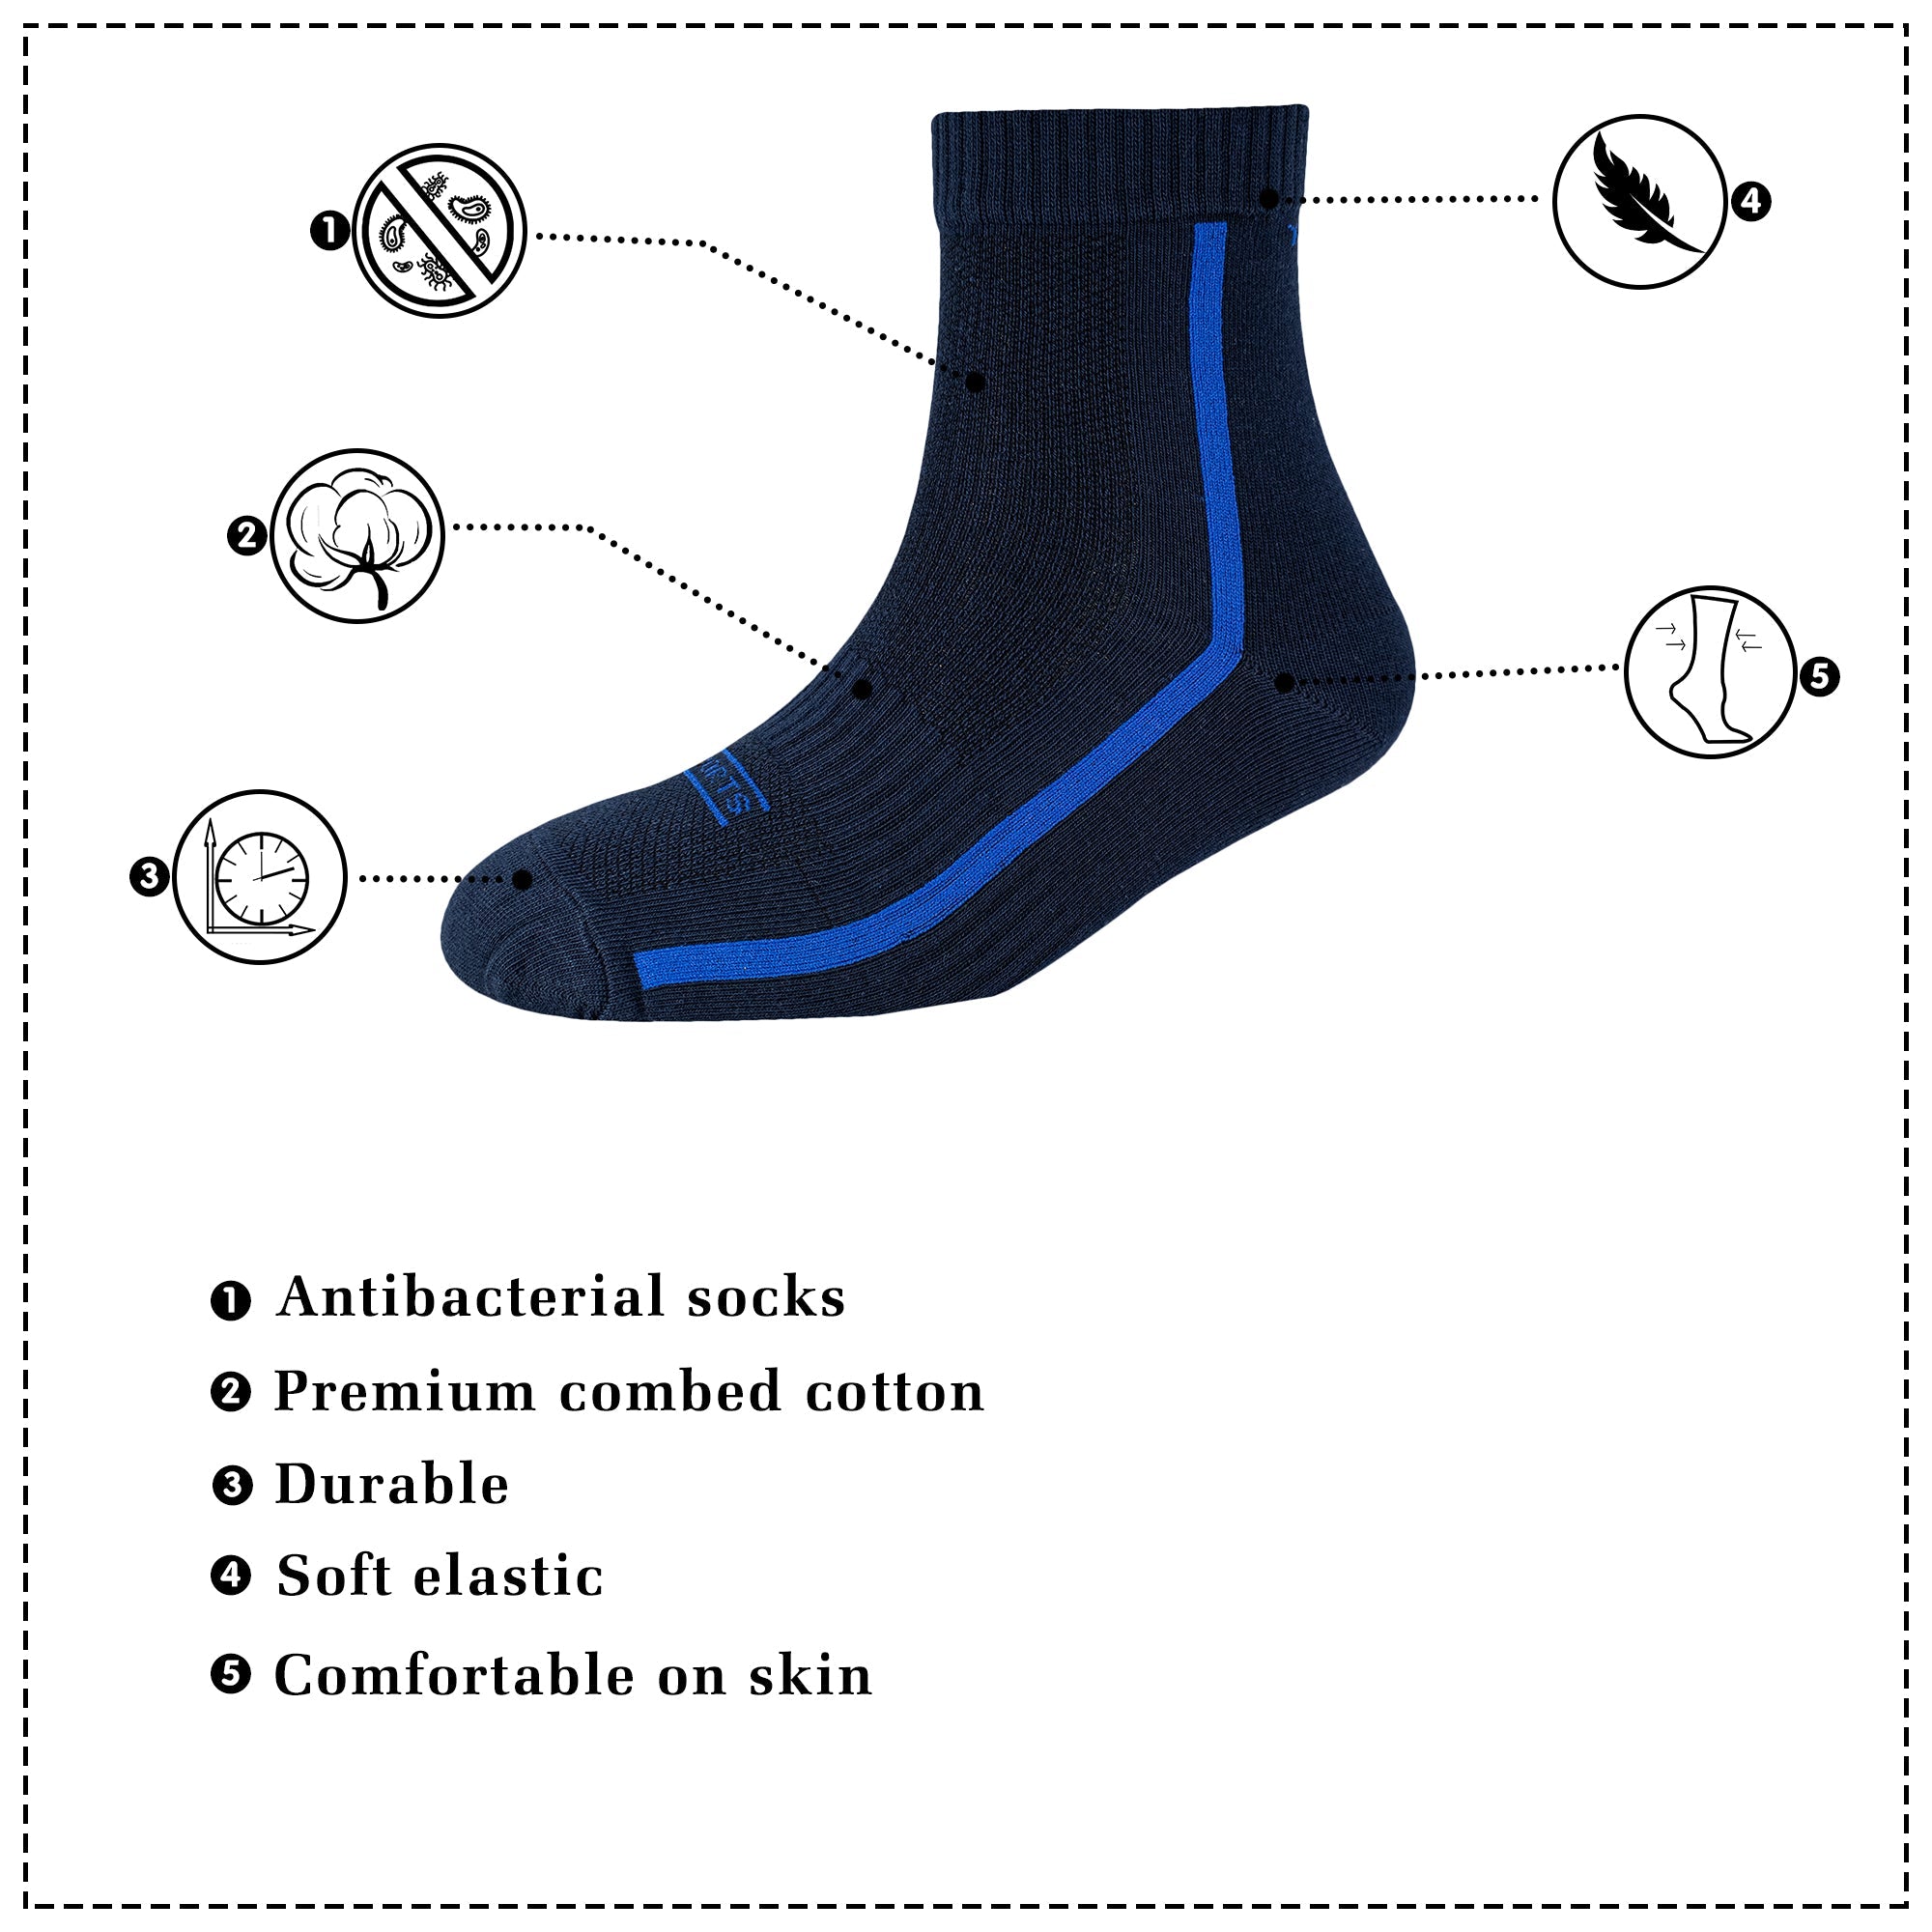 Men's AL039 Pack of 3 Ankle Socks